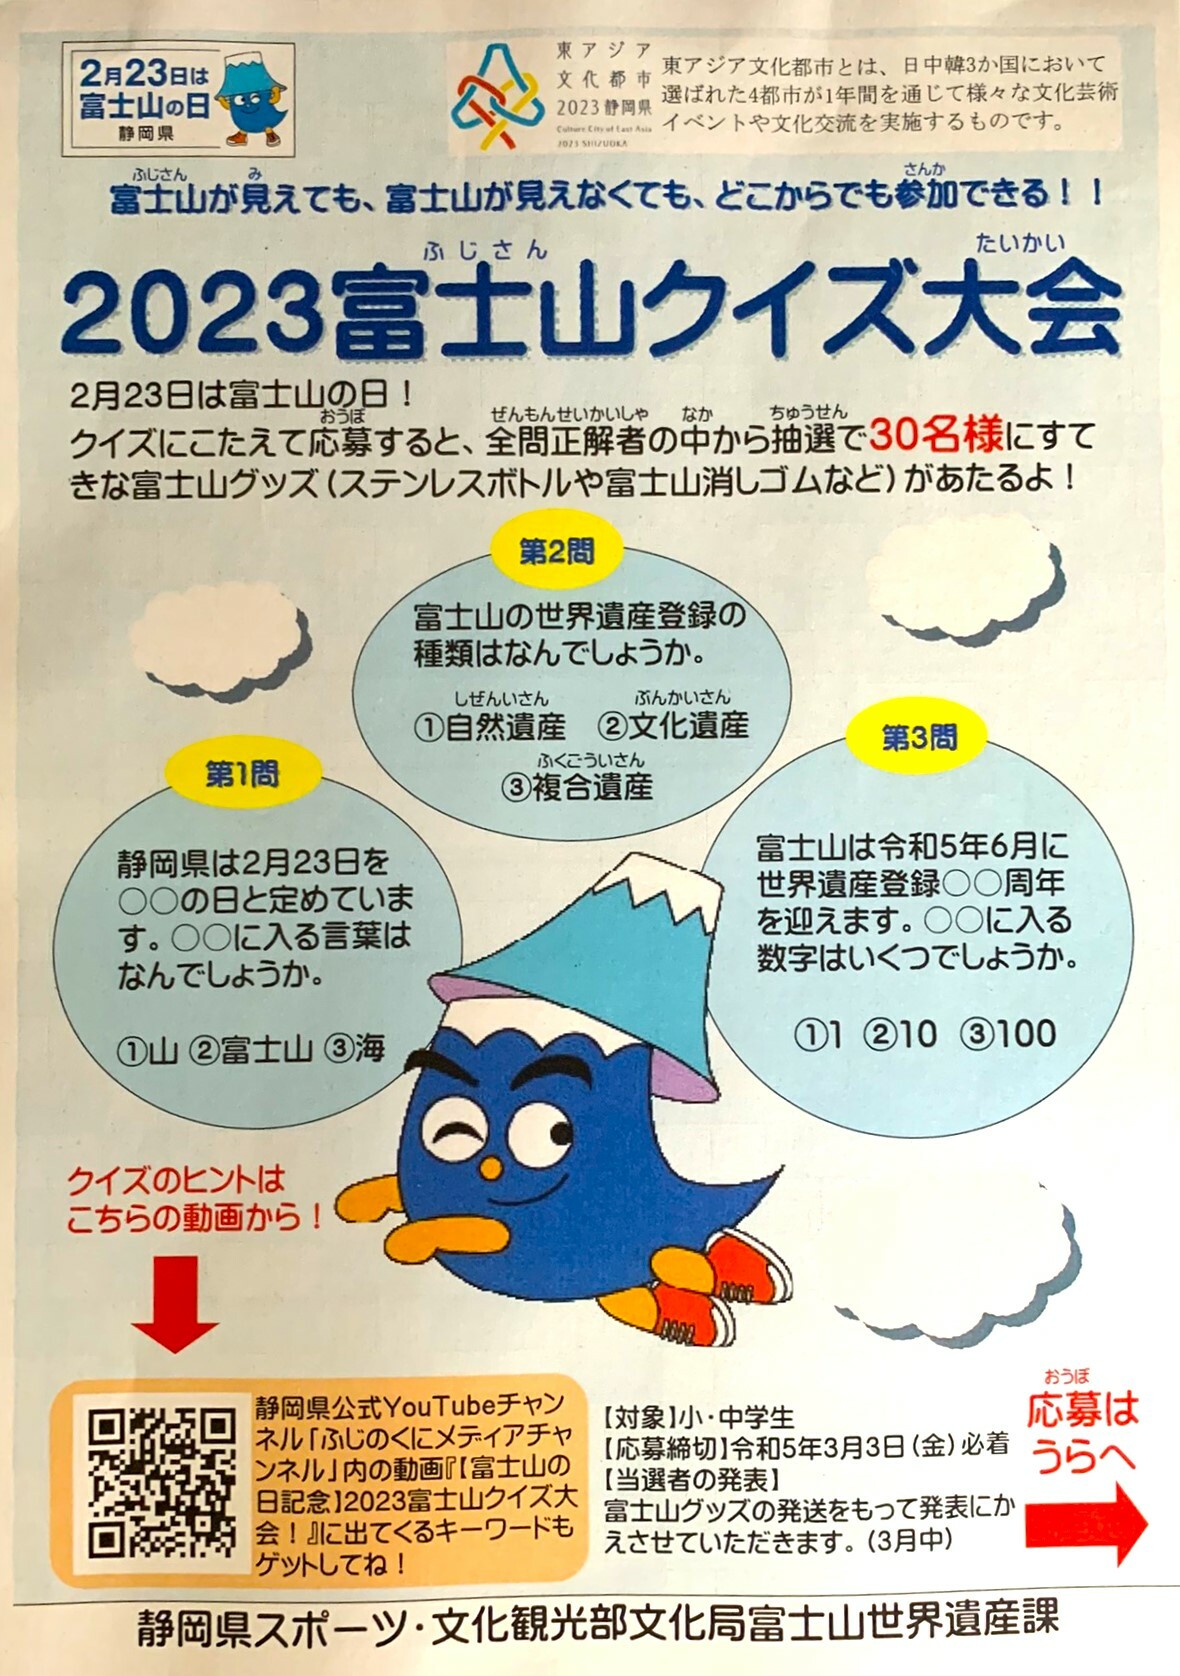 2023富士山クイズ大会